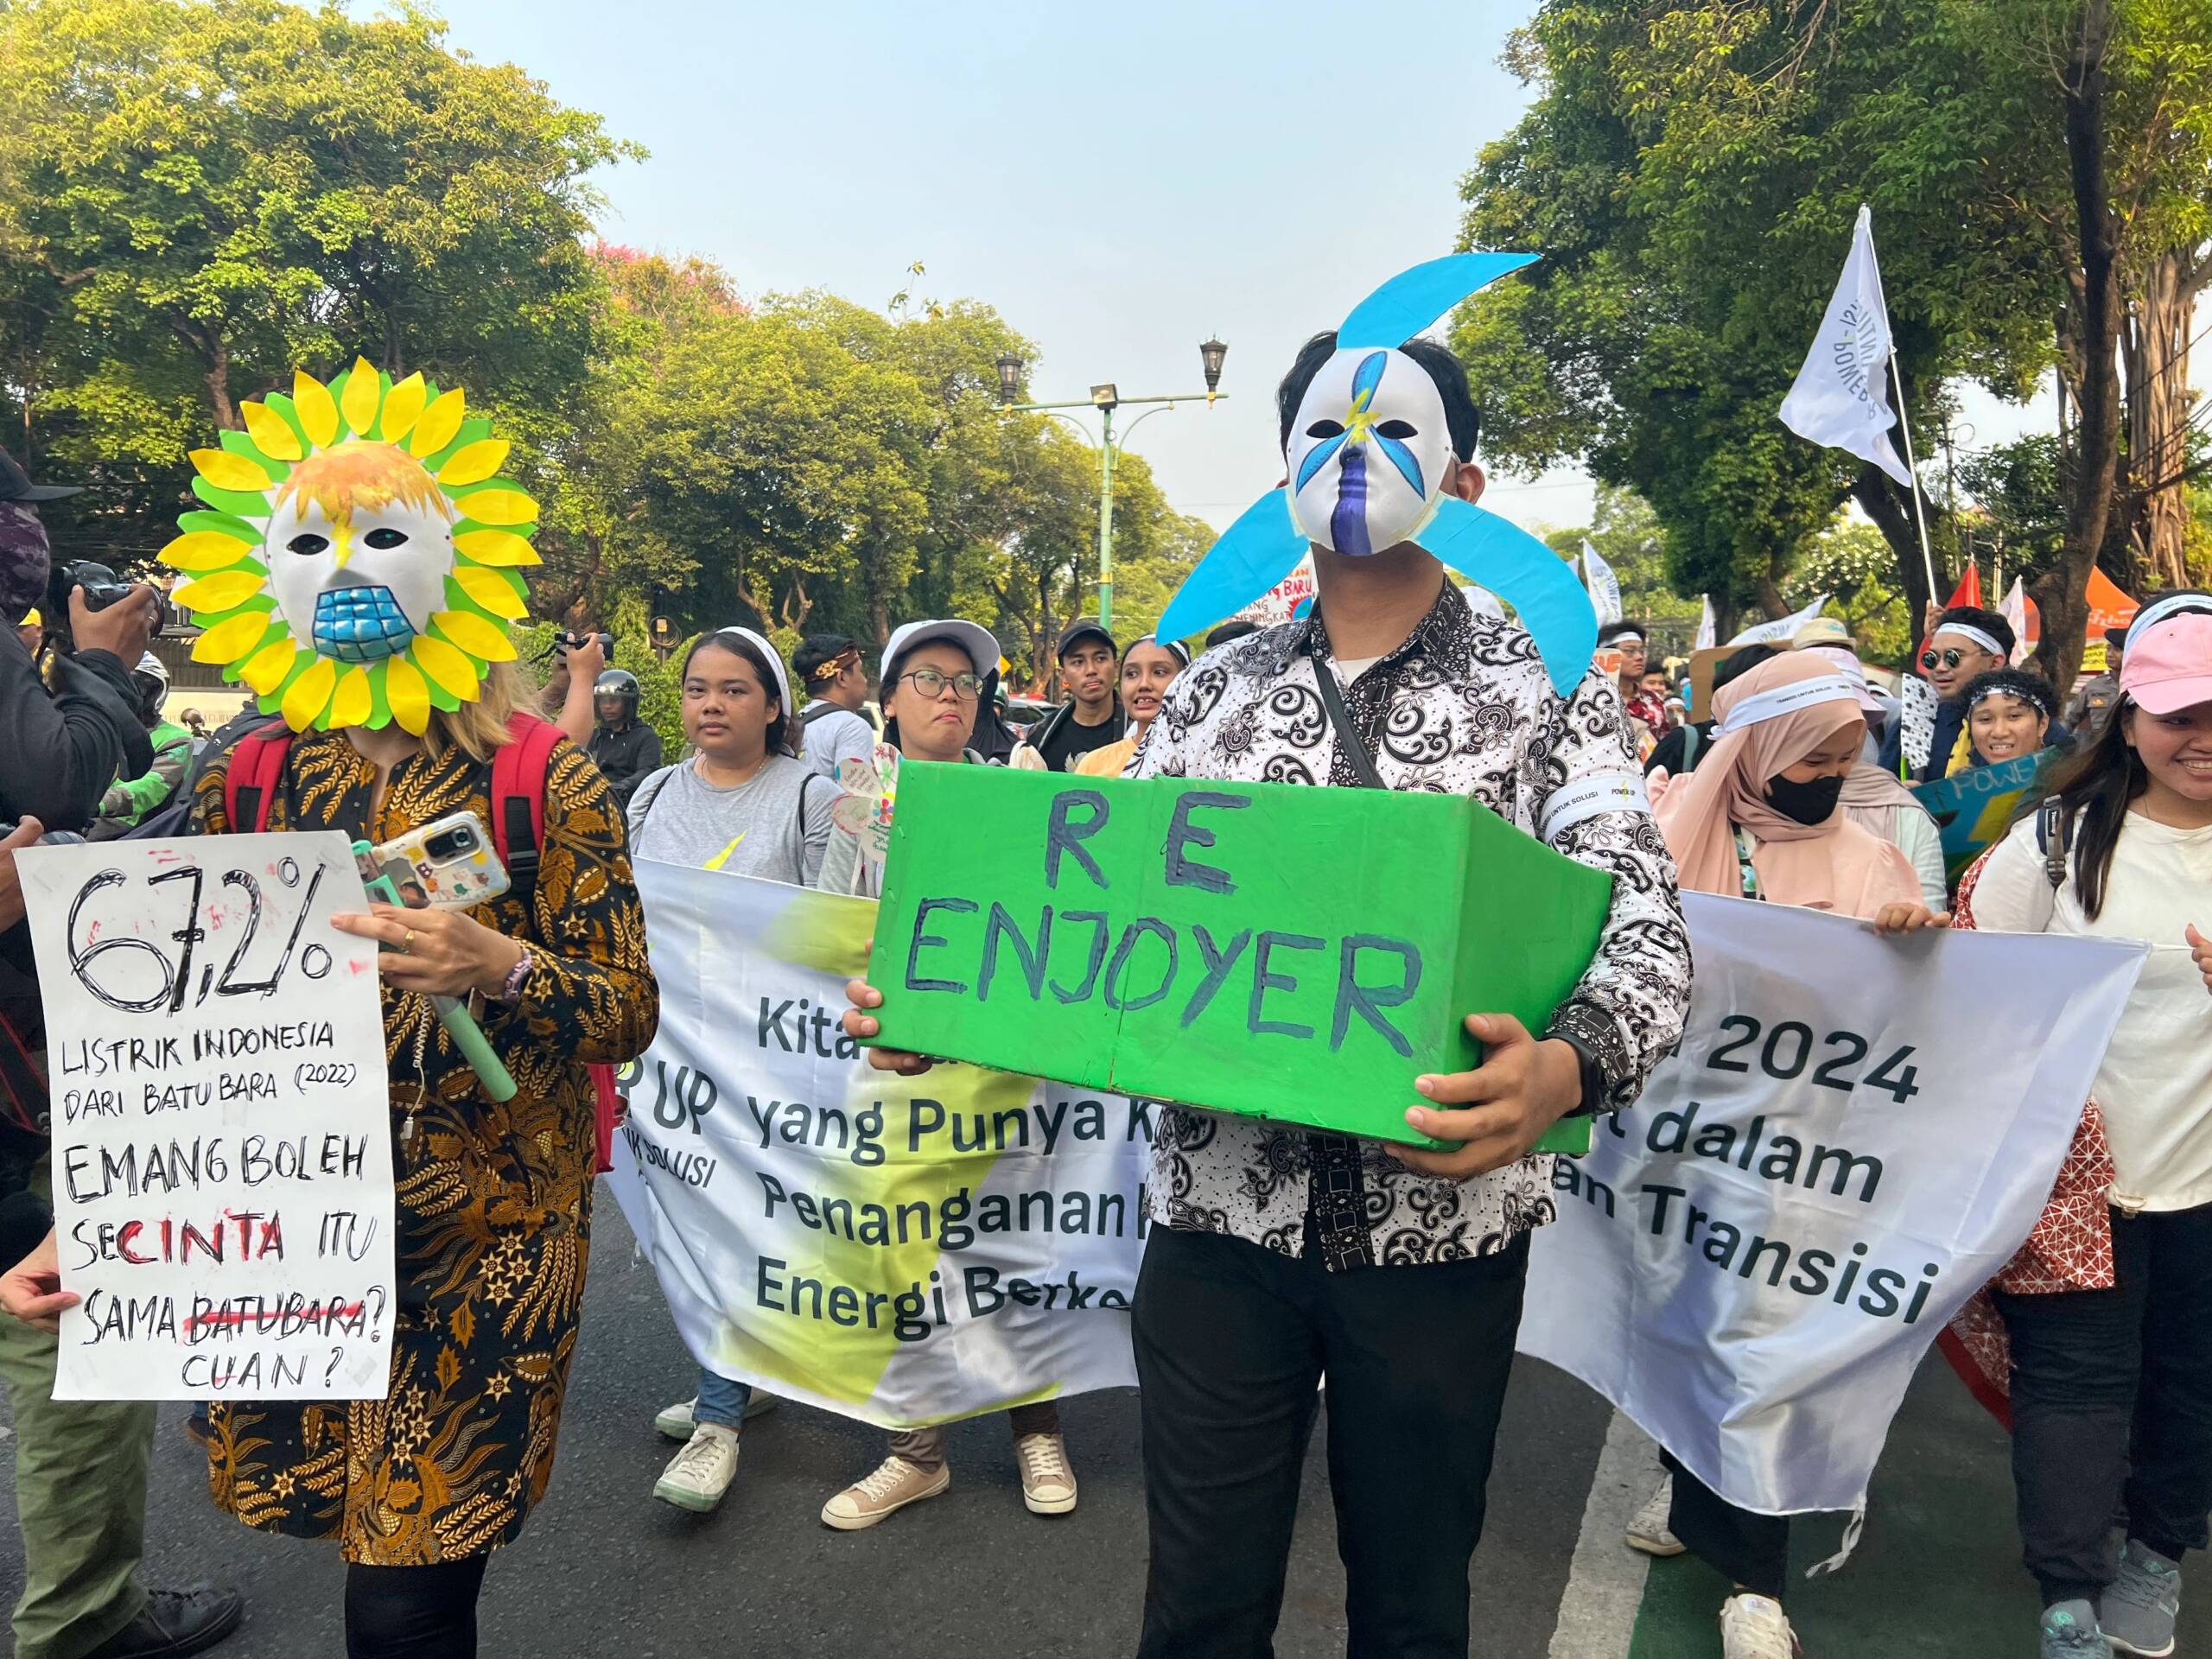 Jacarta, Indonésia, 3 de novembro: centenas de jovens e adultos caminharam pedindo aos potenciais candidatos presidenciais que priorizem as questões ambientais e uma transição energética justa nas eleições do próximo ano. Foto: Kathleen Lei Limayo